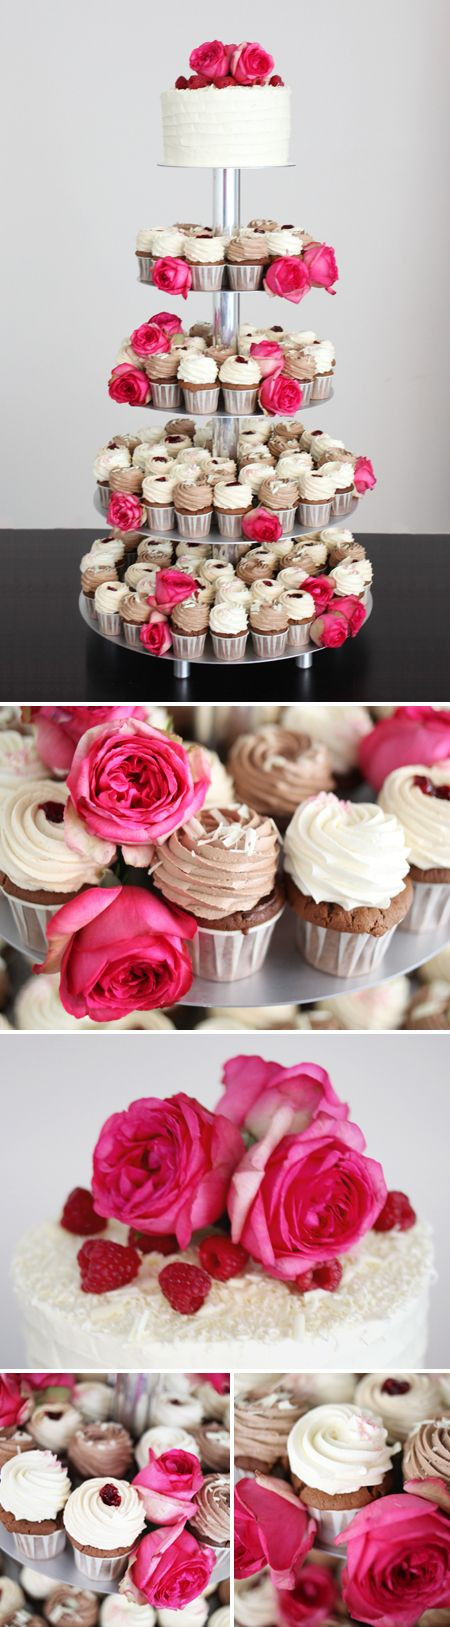 Cupcake Torte Hochzeit
 Die besten 25 Cupcake hochzeitstorten Ideen auf Pinterest